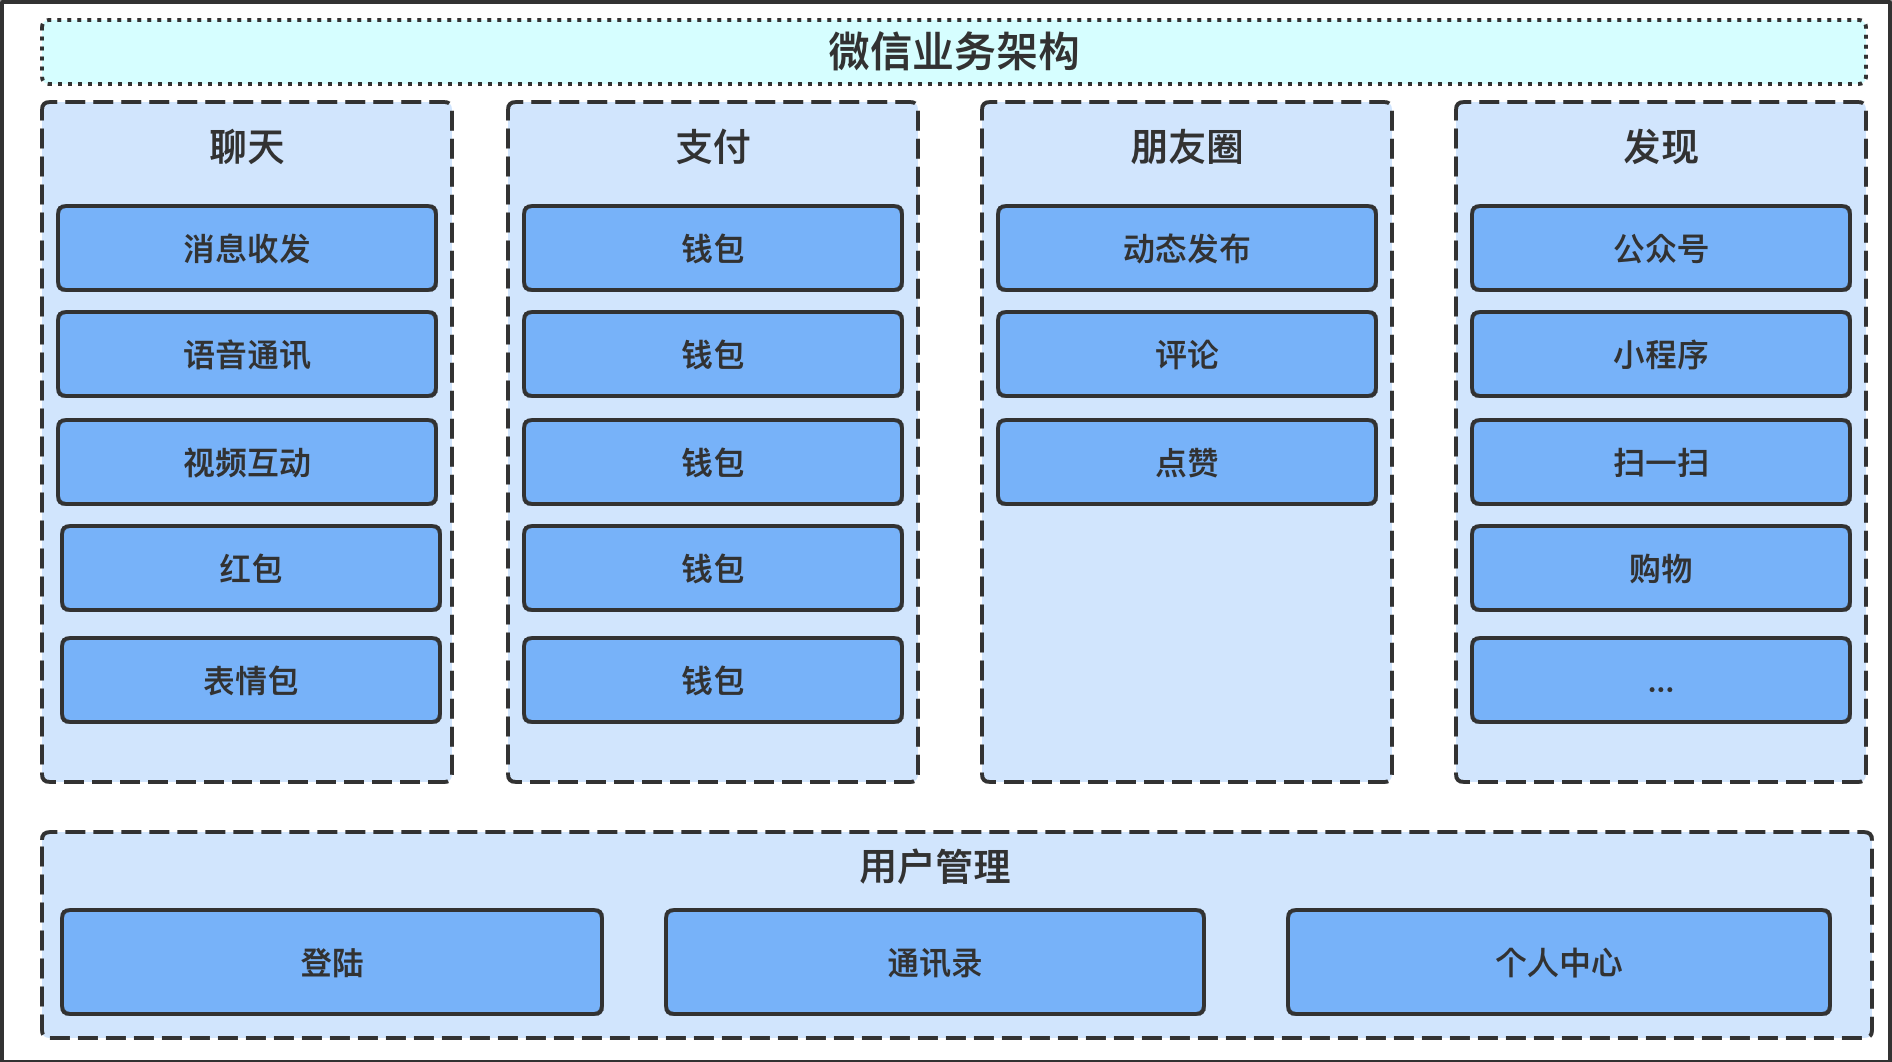 一,微信的业务架构图